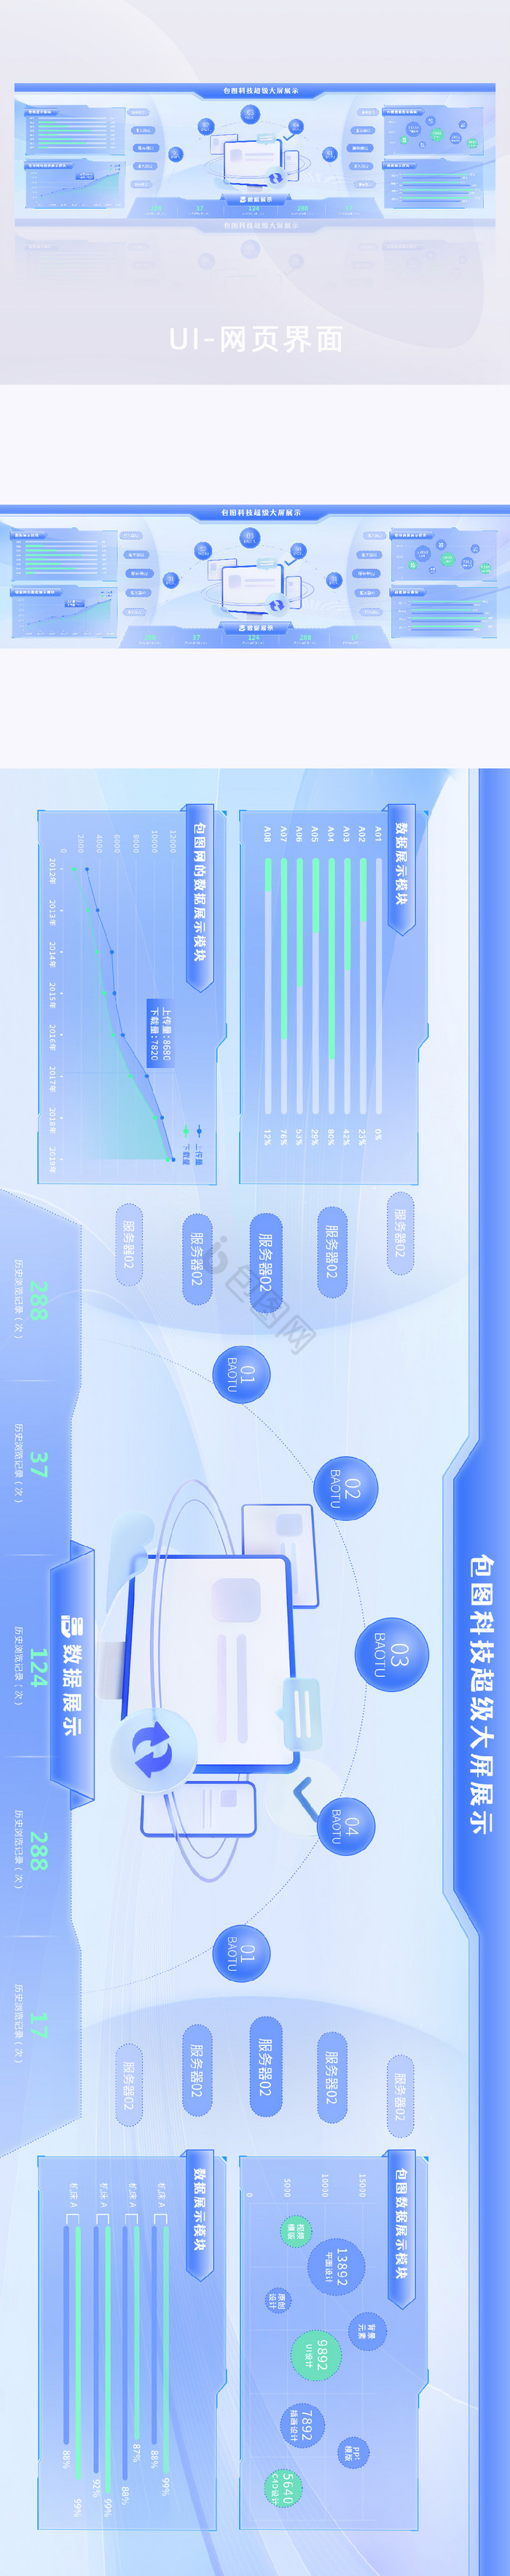 蓝色科技浅色可视化数据超级大屏